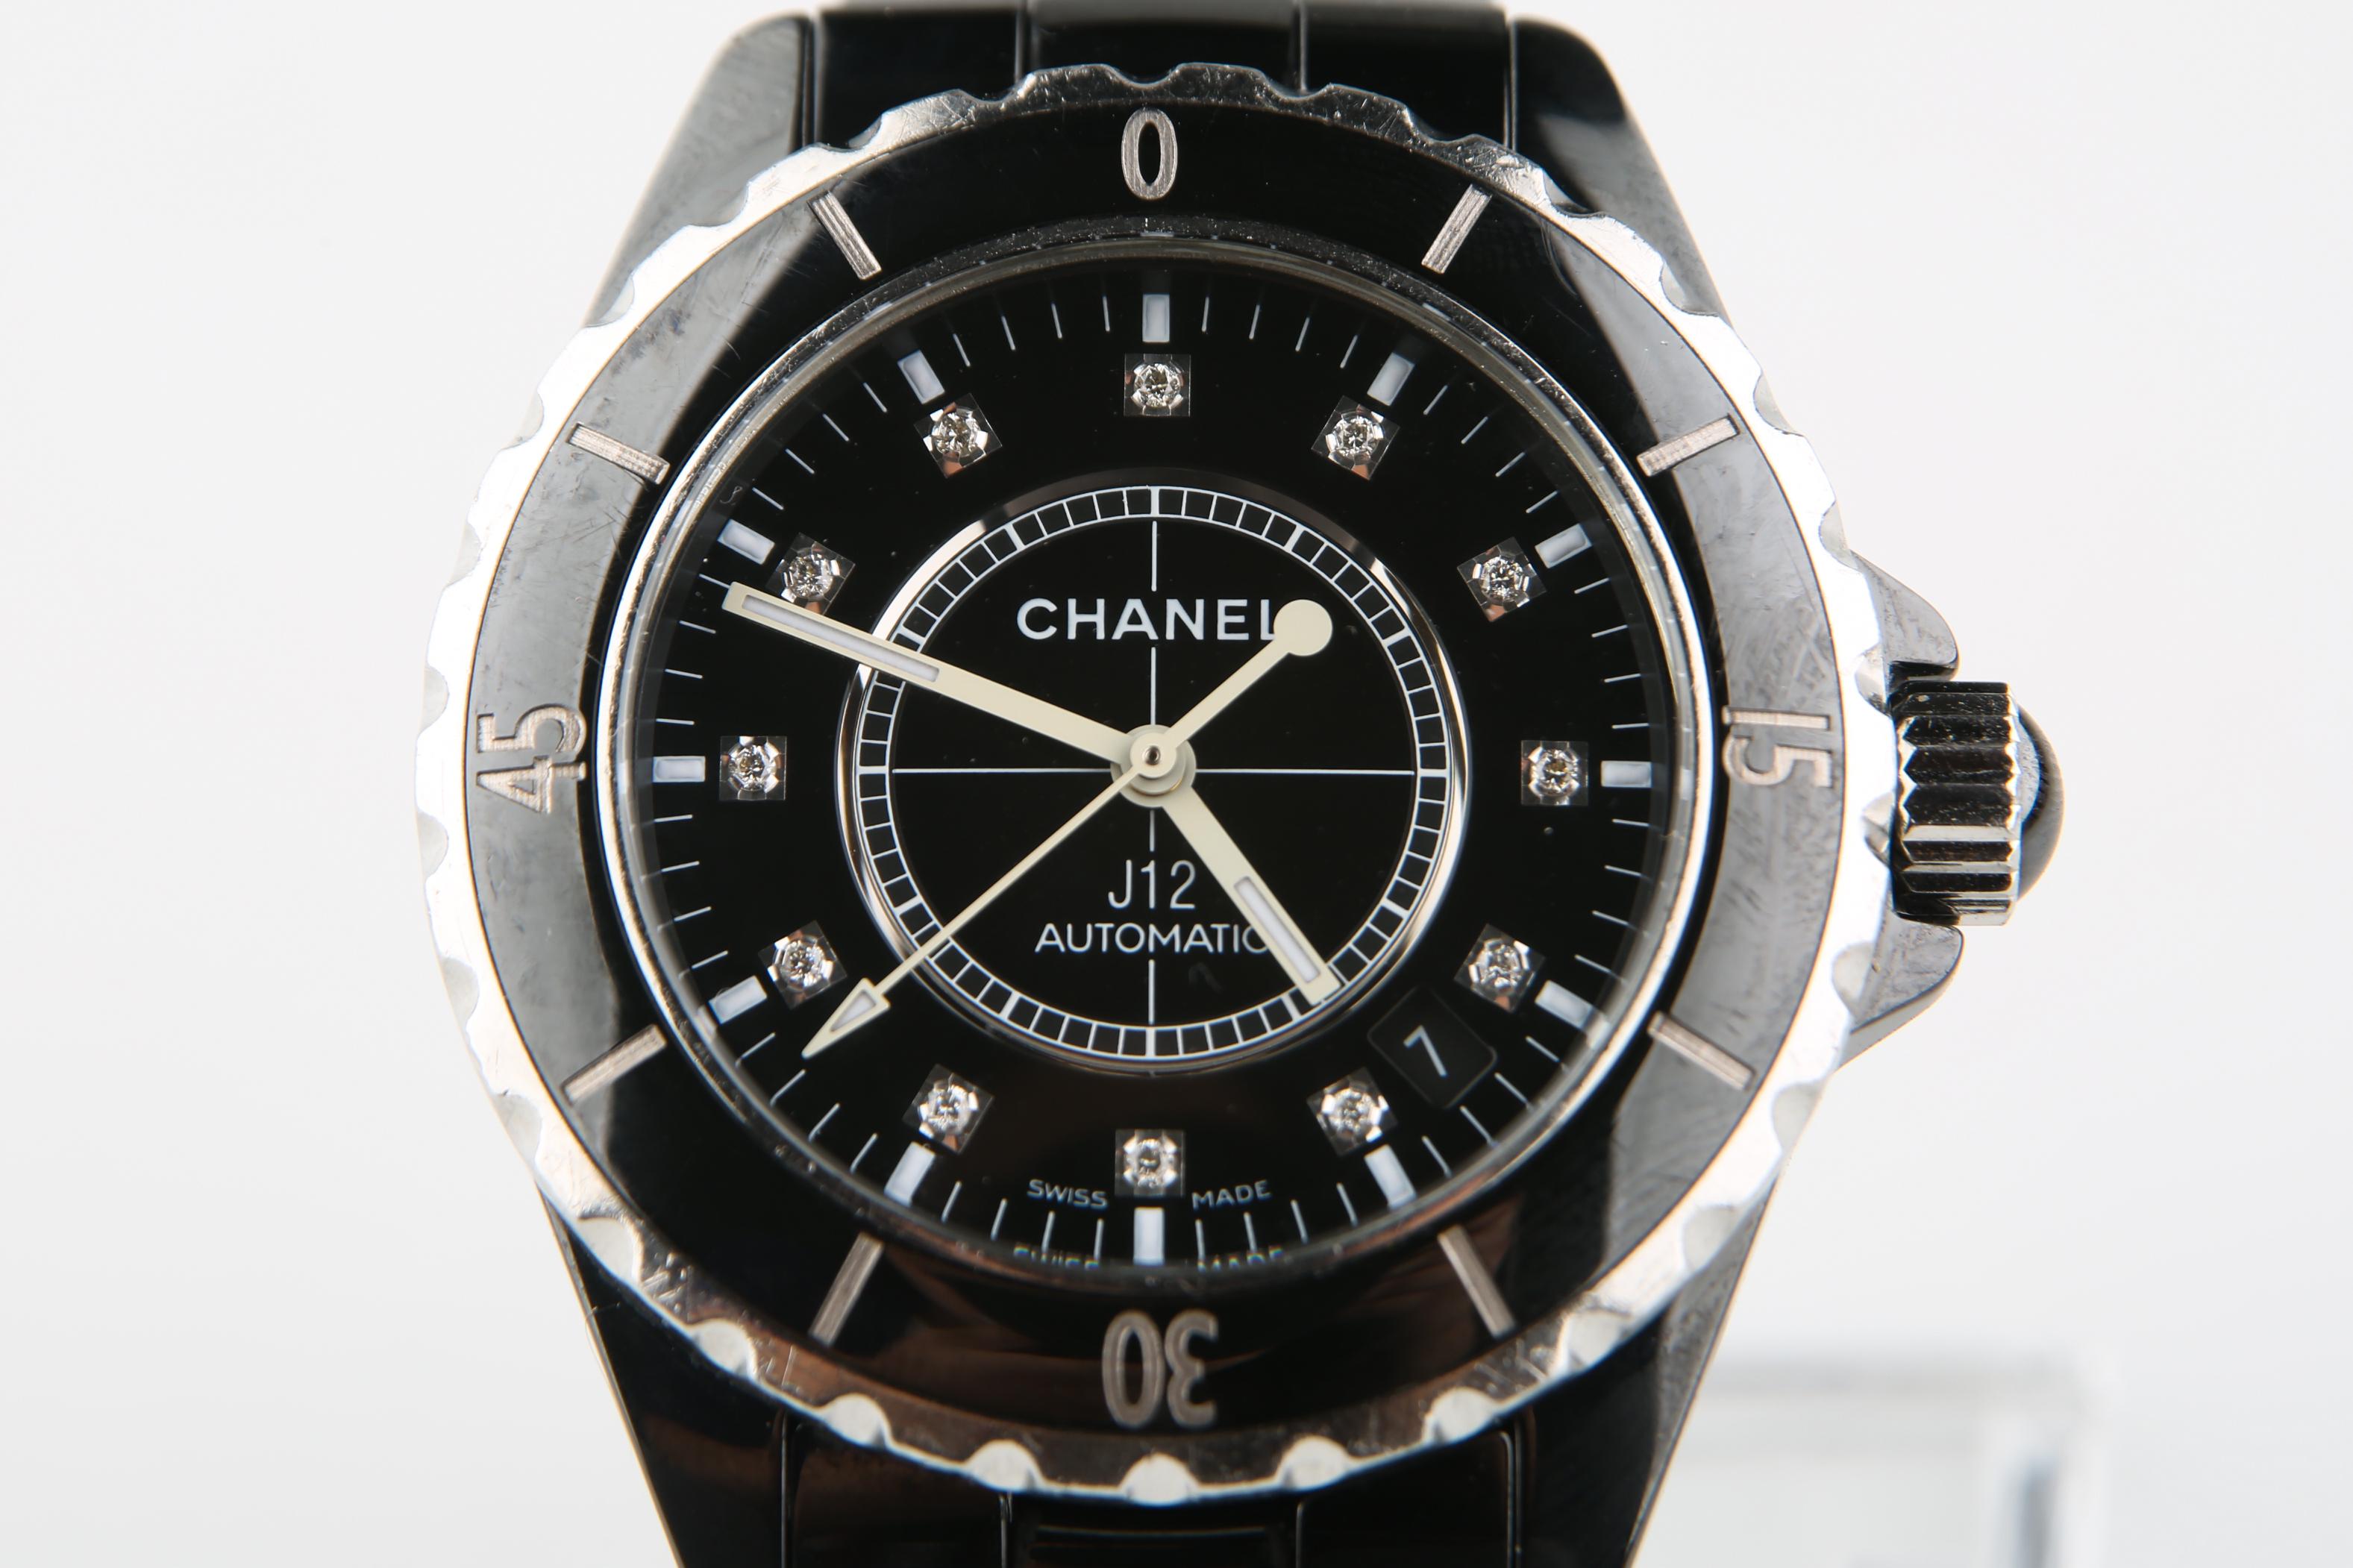 Modell: J12 Klassisch Automatisch
Modellnummer: H0685
Seriennummer: LN85848
Schwarzes Chanel-Edelstahlgehäuse mit Taucherlünette
Einseitig drehbare Taucherlünette aus schwarzem Emaille
Chanel Automatisches mechanisches Uhrwerk mit Automatikaufzug
38